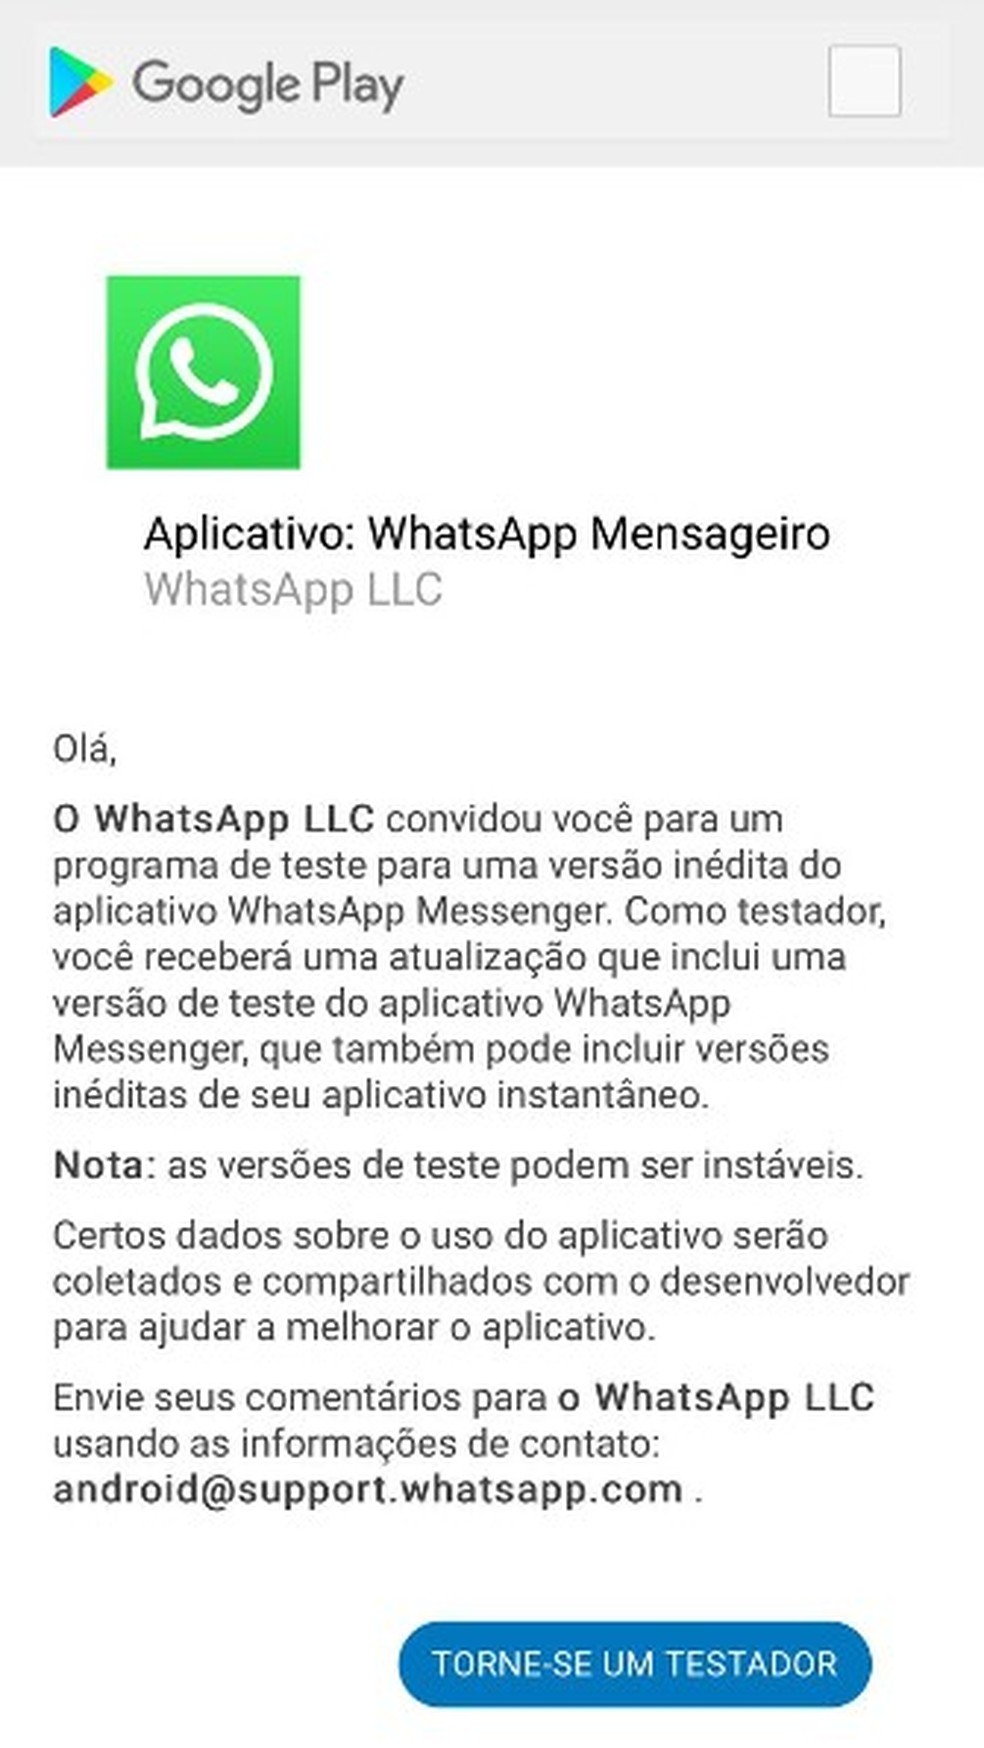 WhatsApp beta pedi para atualizar, mais não tem atualização